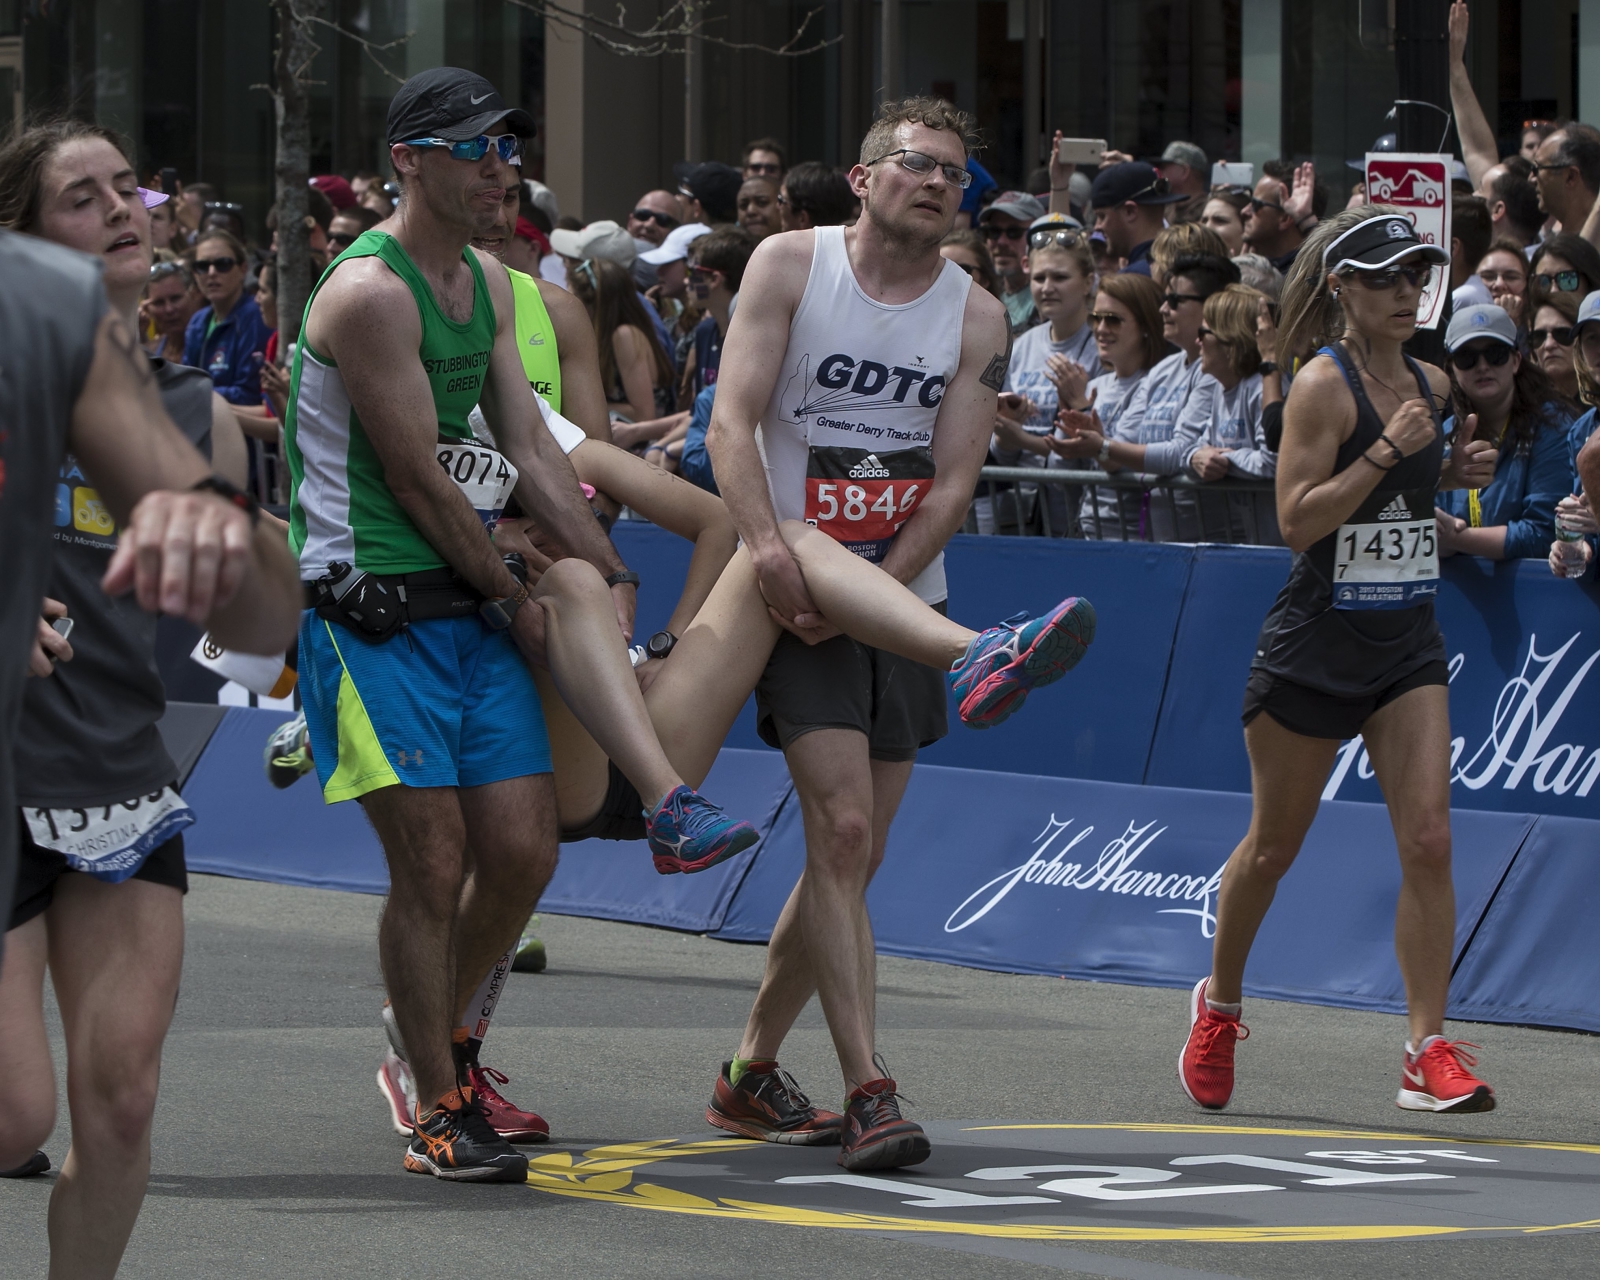 Uczestnicy pomagają innym w przekroczeniu linii mety 121 bostońskiego maratonu w Boston, Ma